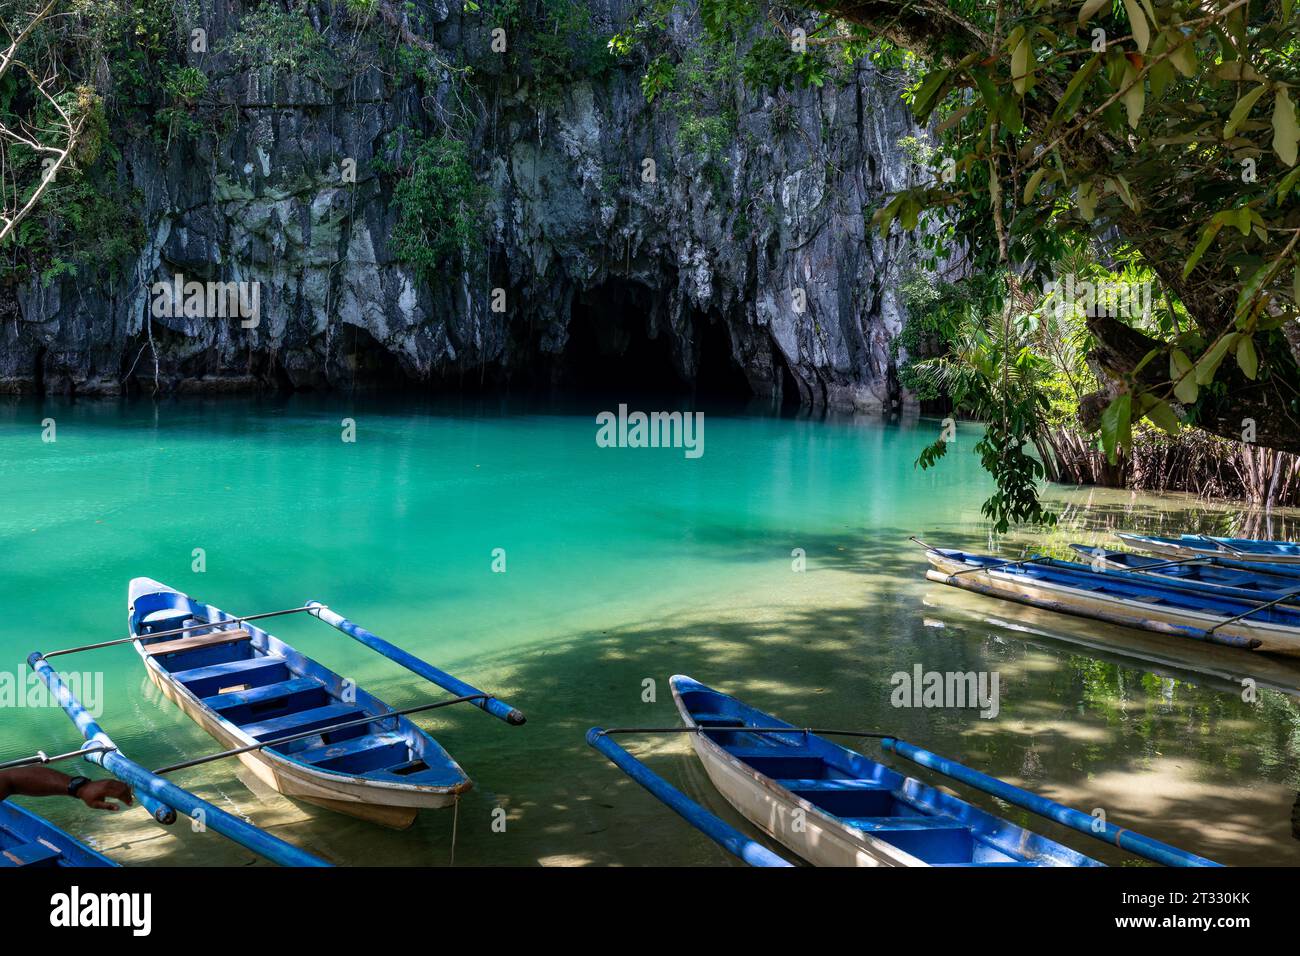 Site de bateaux bleus dans l'eau bleu vert en attente d'explorer le système souterrain de grottes et de cavernes de rivière Banque D'Images